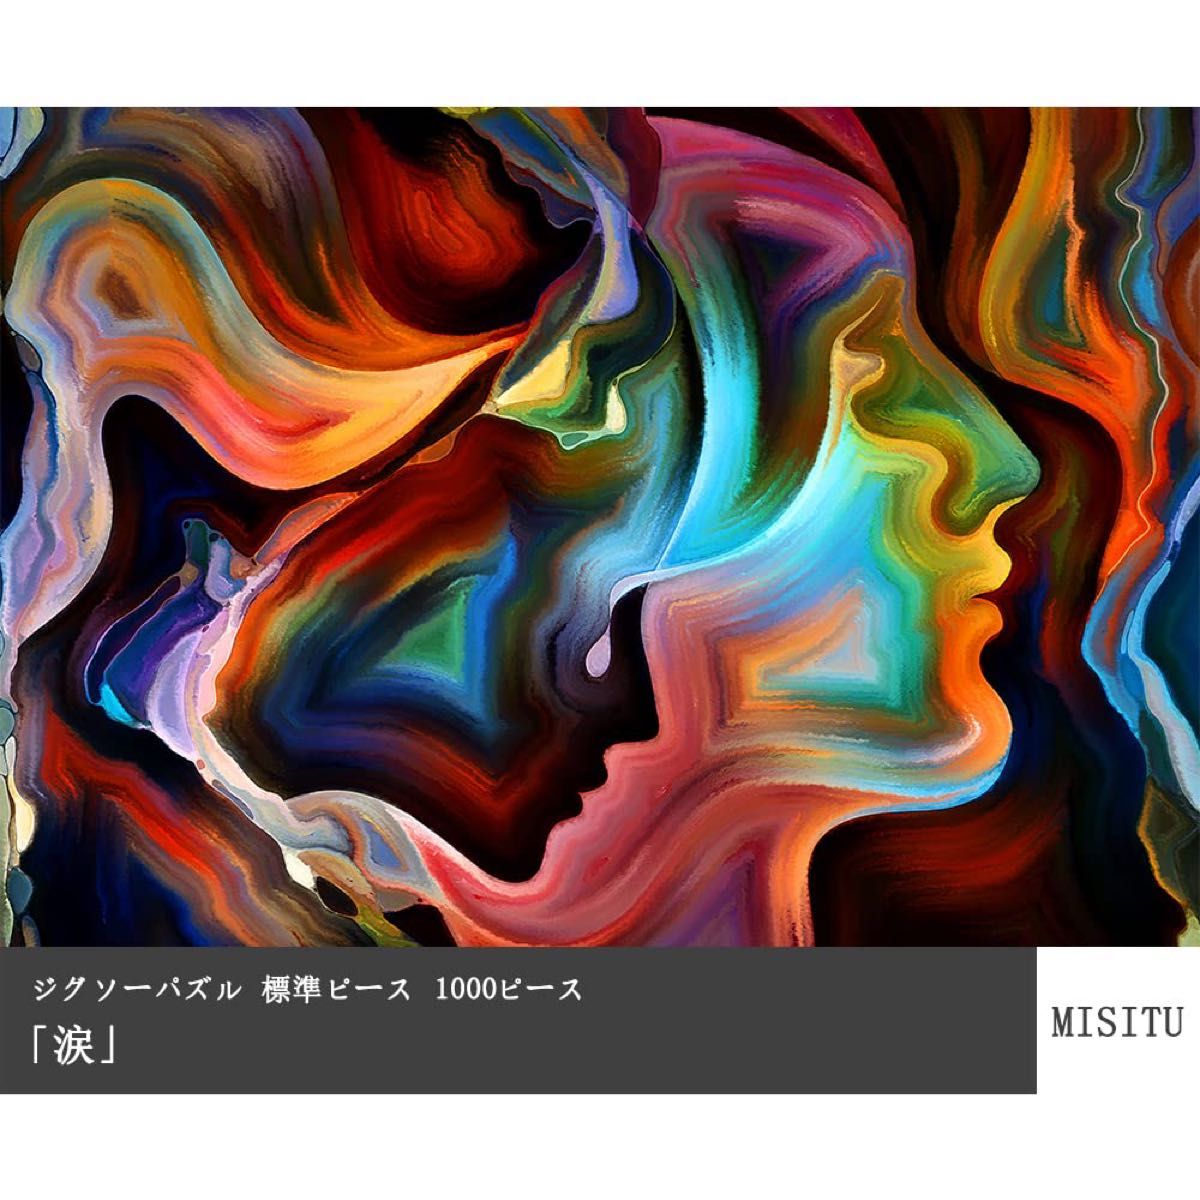 【月末セール】【送料無料】MISITU ジグソーパズル 1000ピース パズル 絵画 アート 70×50cm 涙 標準ピース